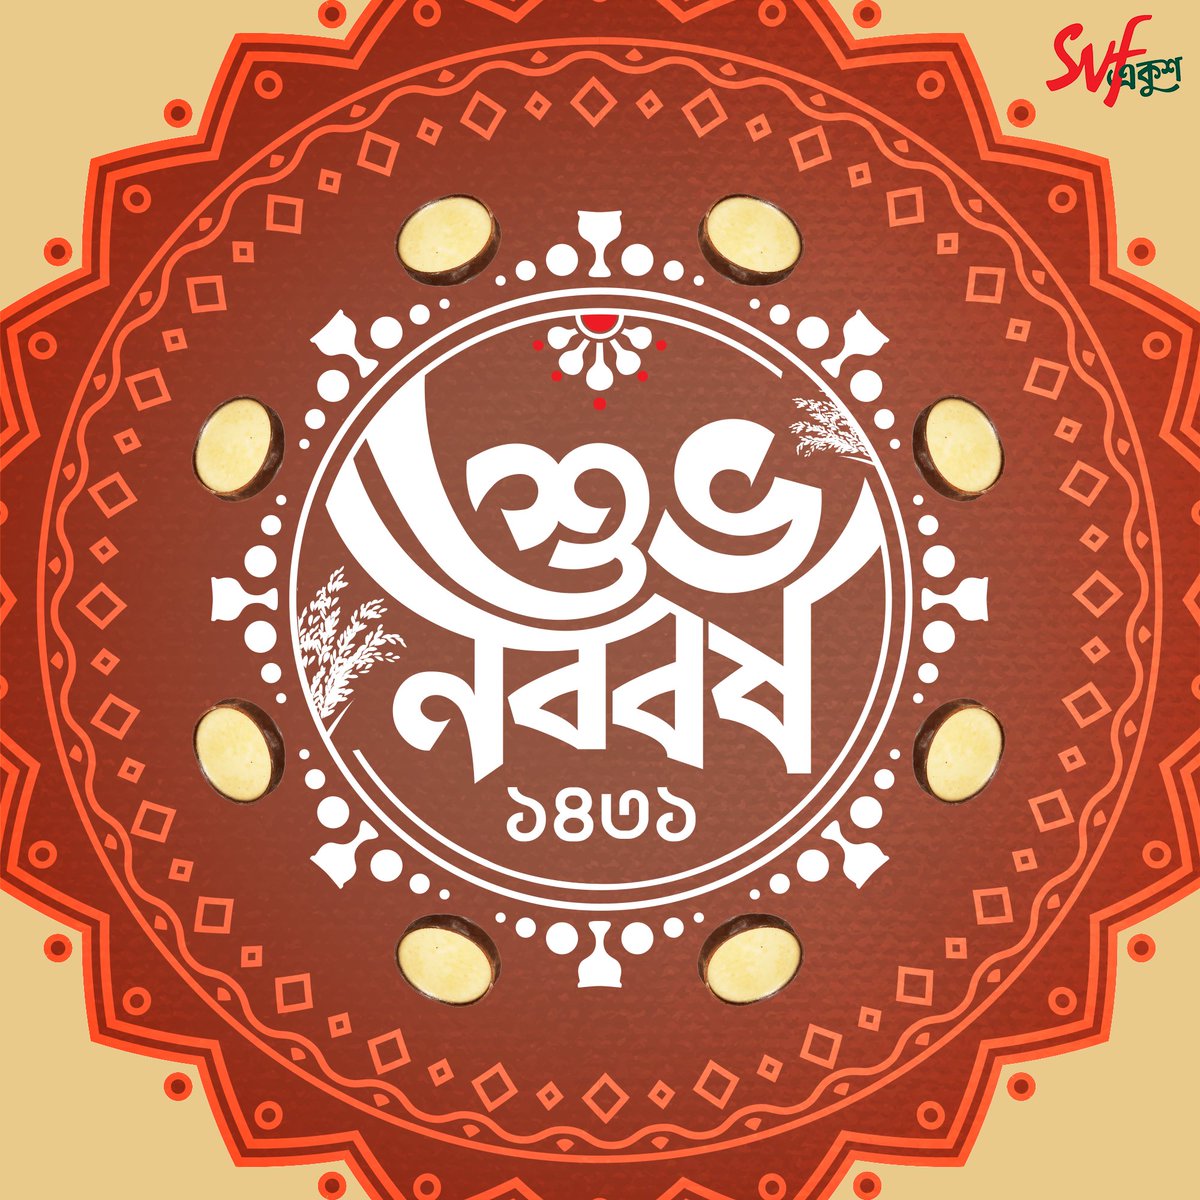 নতুন বছরে শুভ হোক সবকিছু…
#SVFEkush -এর পক্ষ থেকে জানাই পহেলা বৈশাখের আন্তরিক প্রীতি ও শুভেচ্ছা ❤️

@iammony #subhonoboborsho #poilaboishak #poilaboishakh #Bangladesh